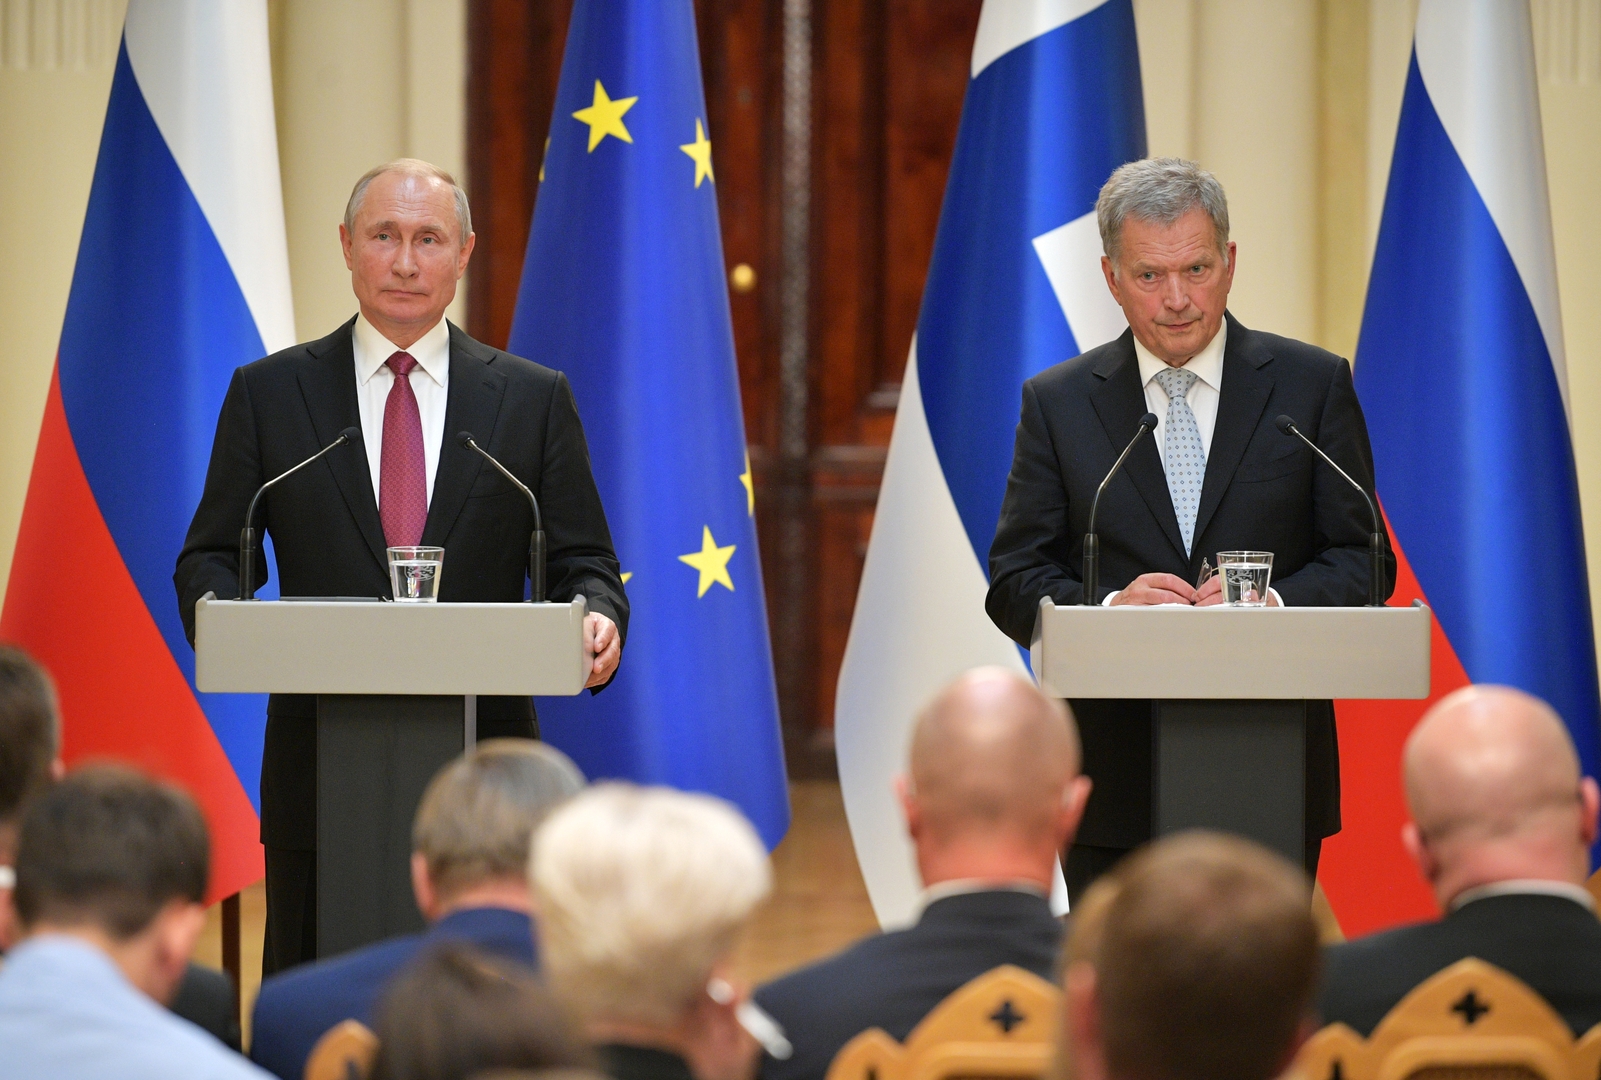 اتصال بين بوتين ورئيس فنلندا حول التسوية الأوكرانية واللقاء المحتمل مع بايدن